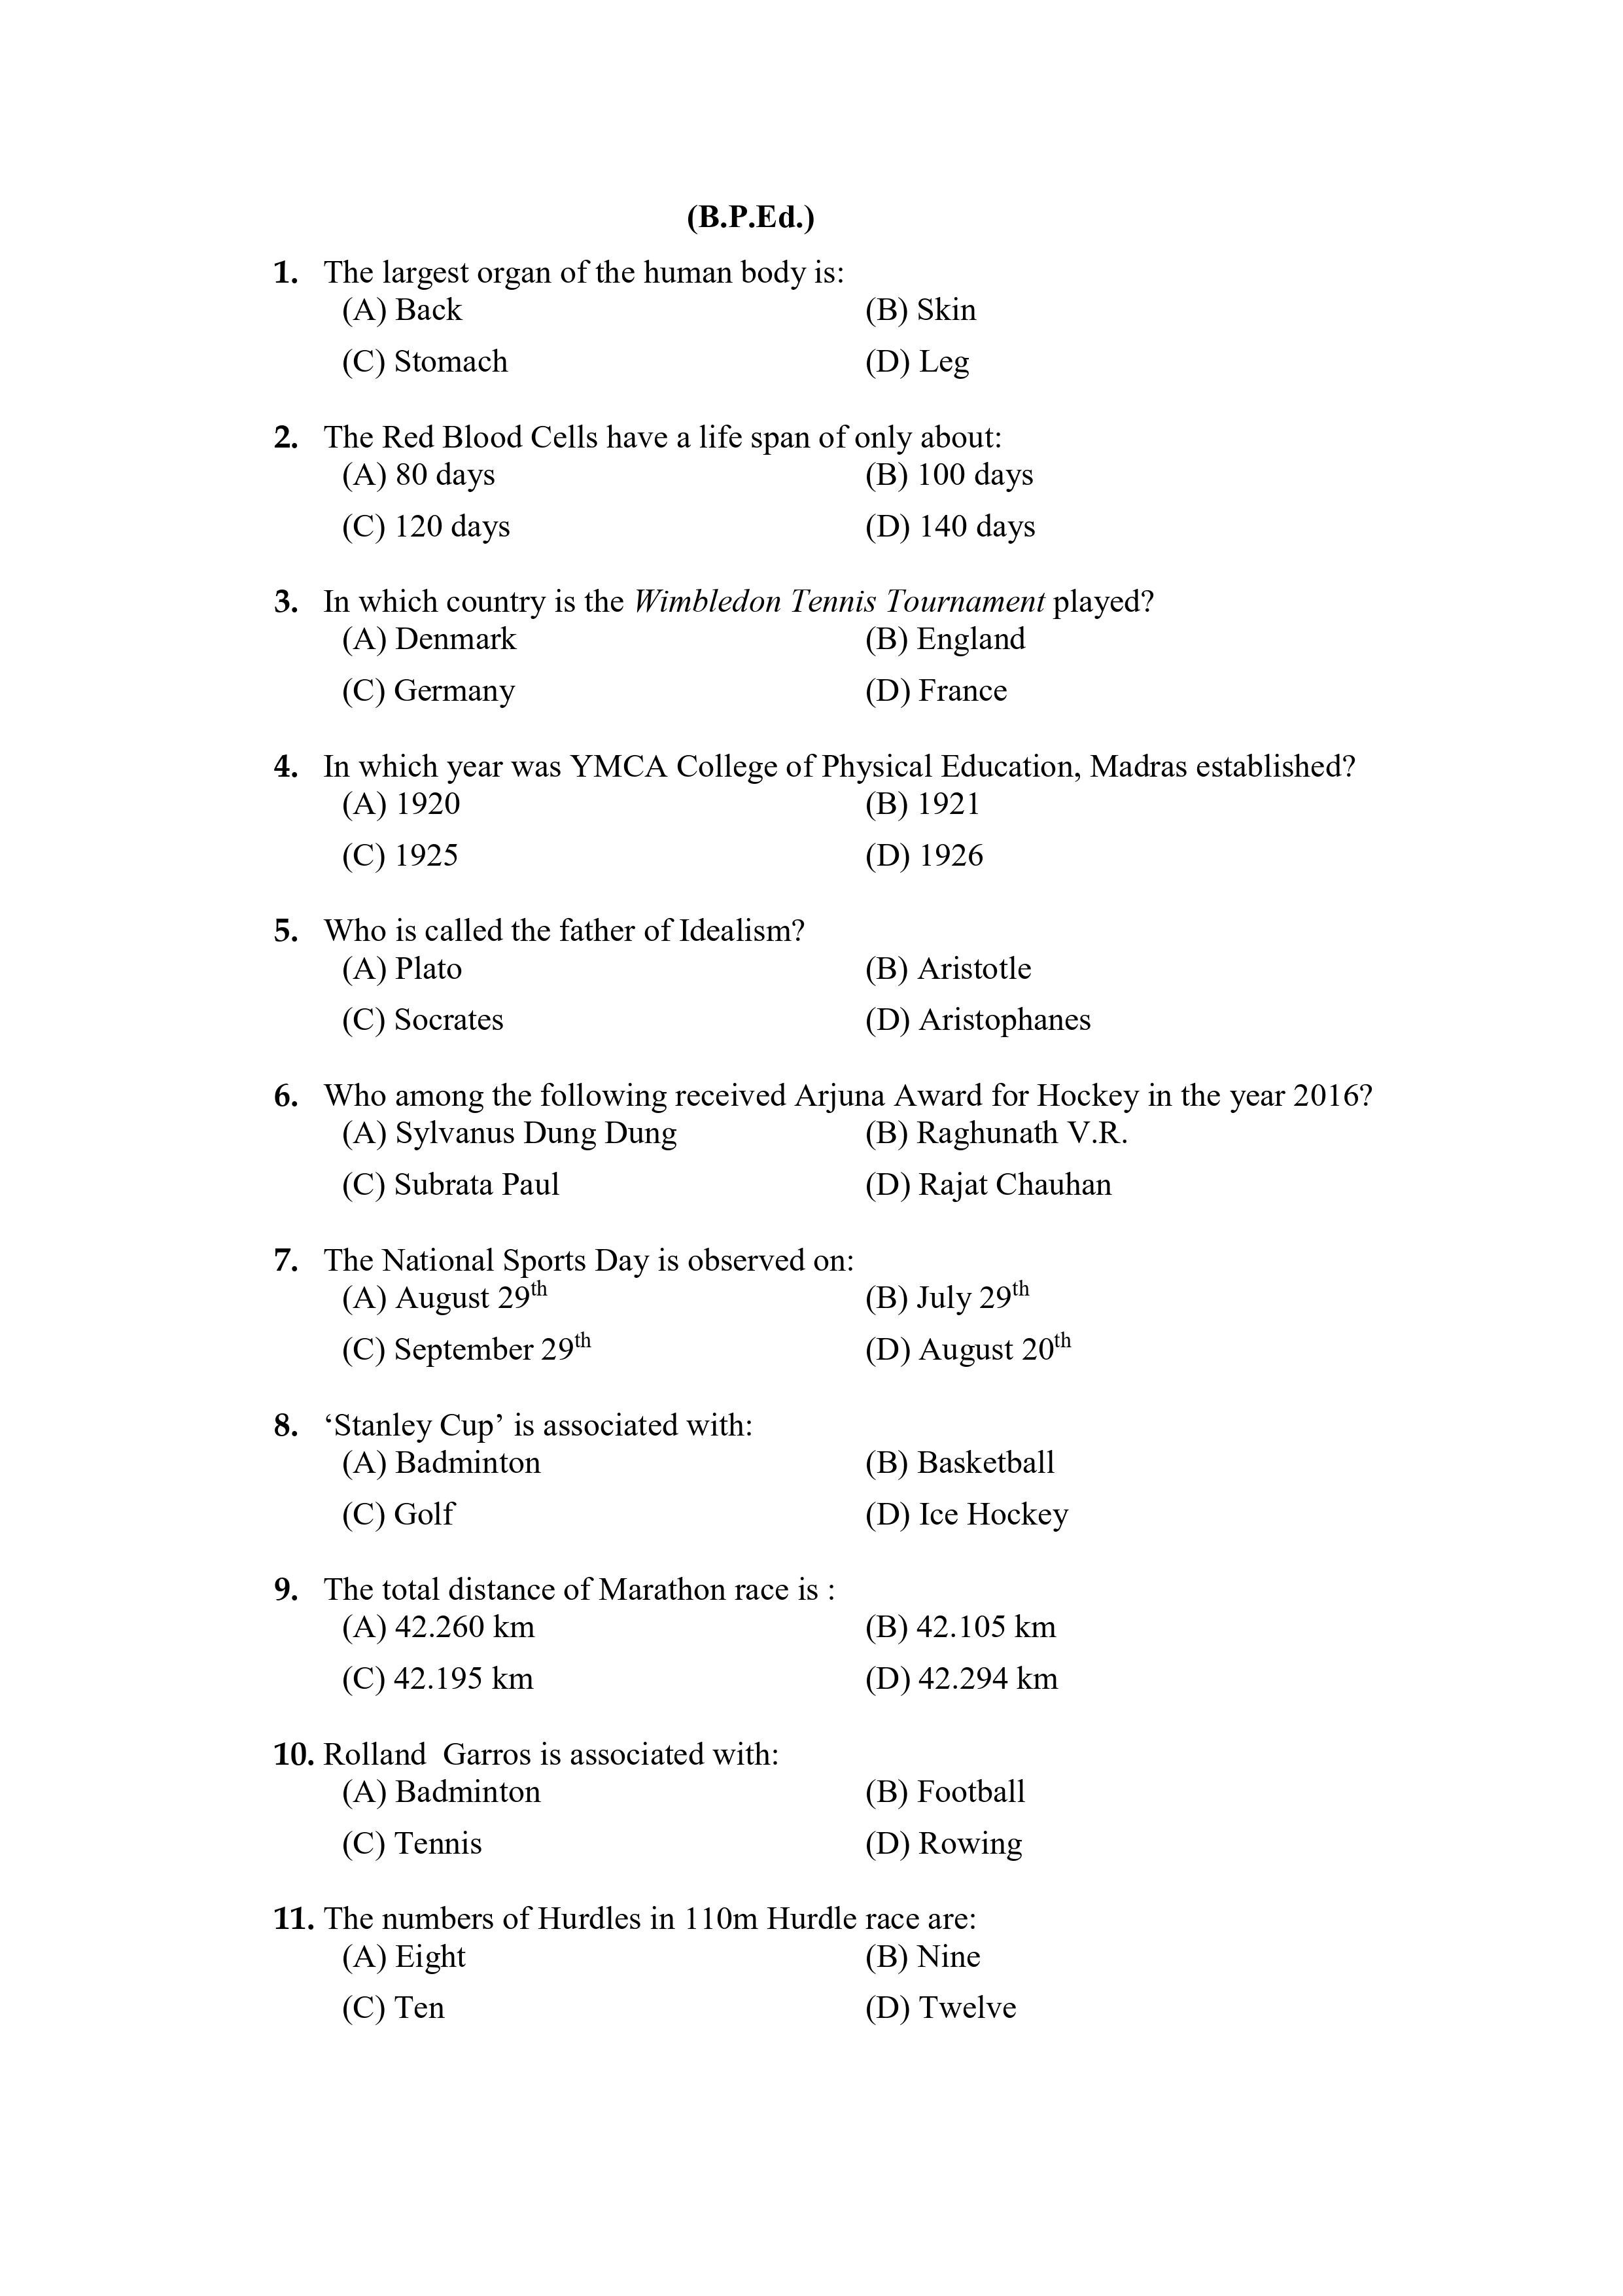 PU CET PG 2021 Question Paper - Page 1